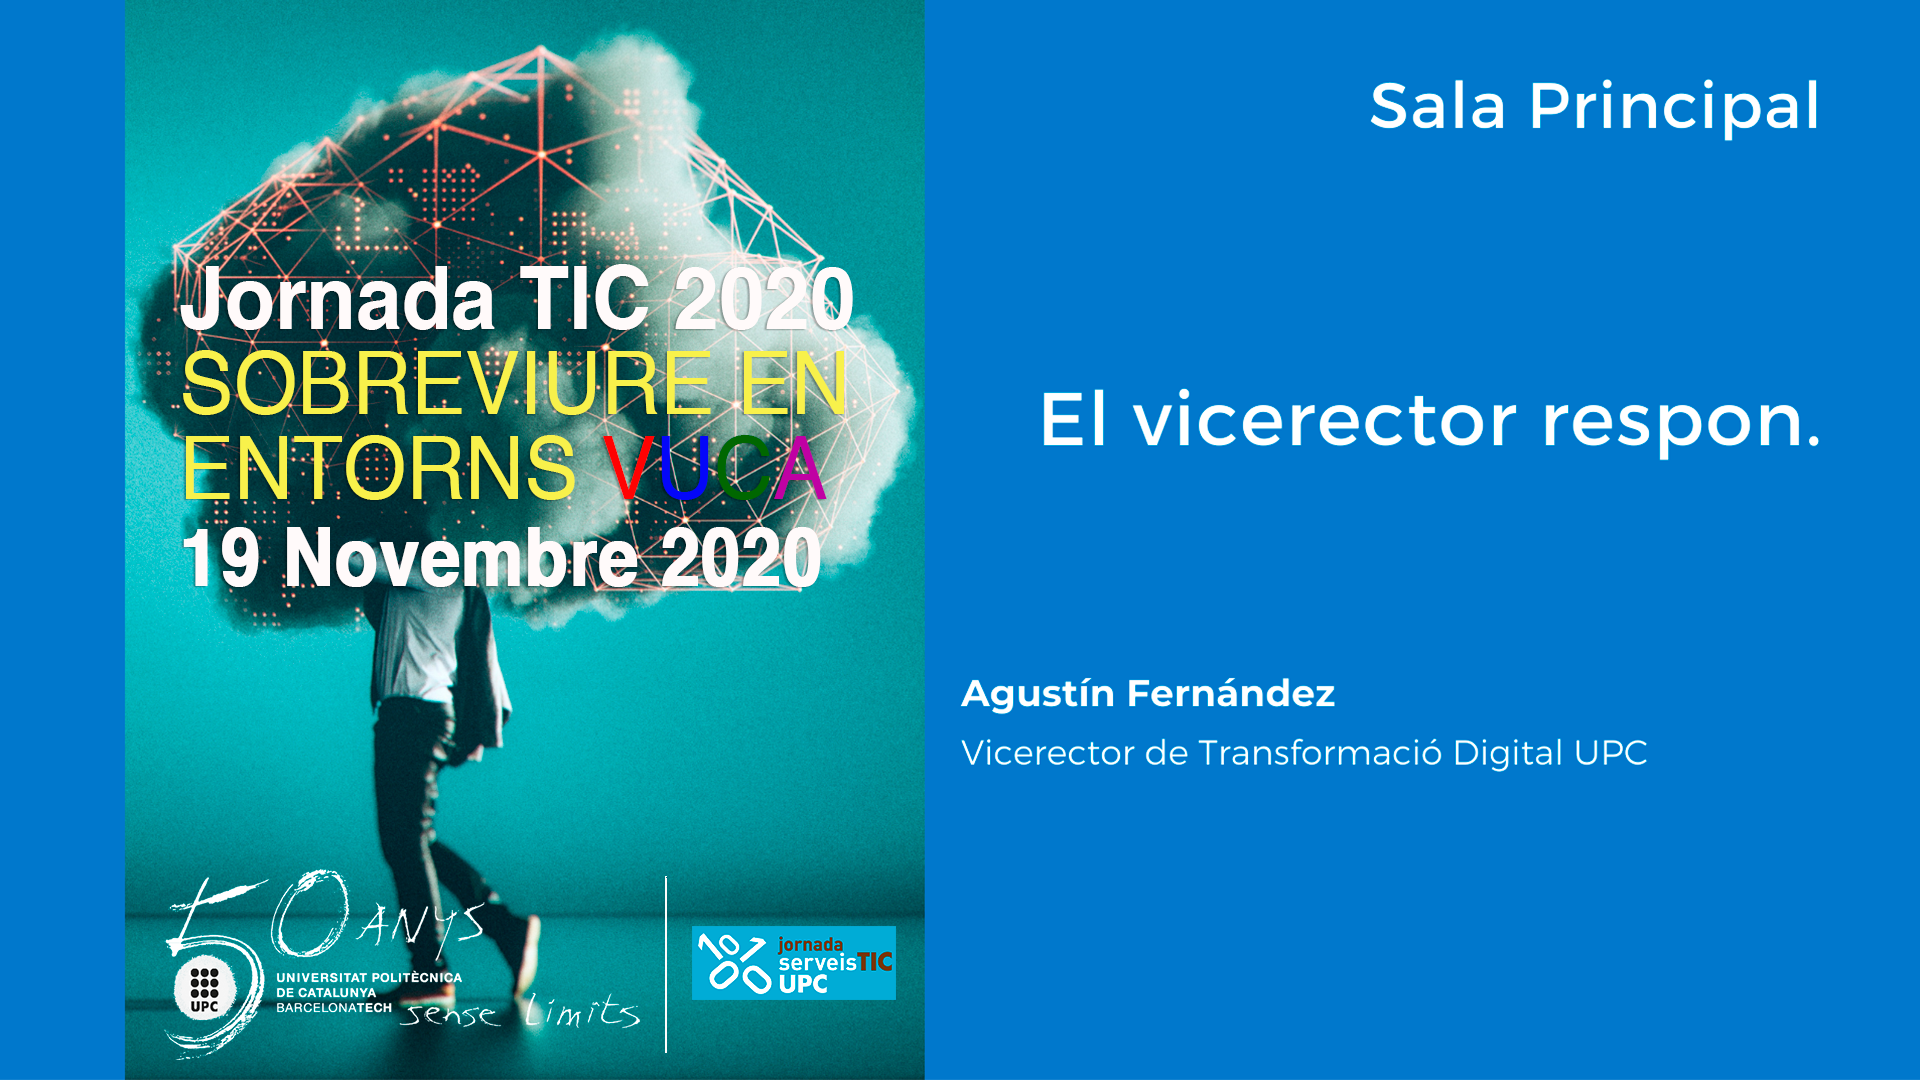 Jornades TIC UPC 2020 - El vicerector respon